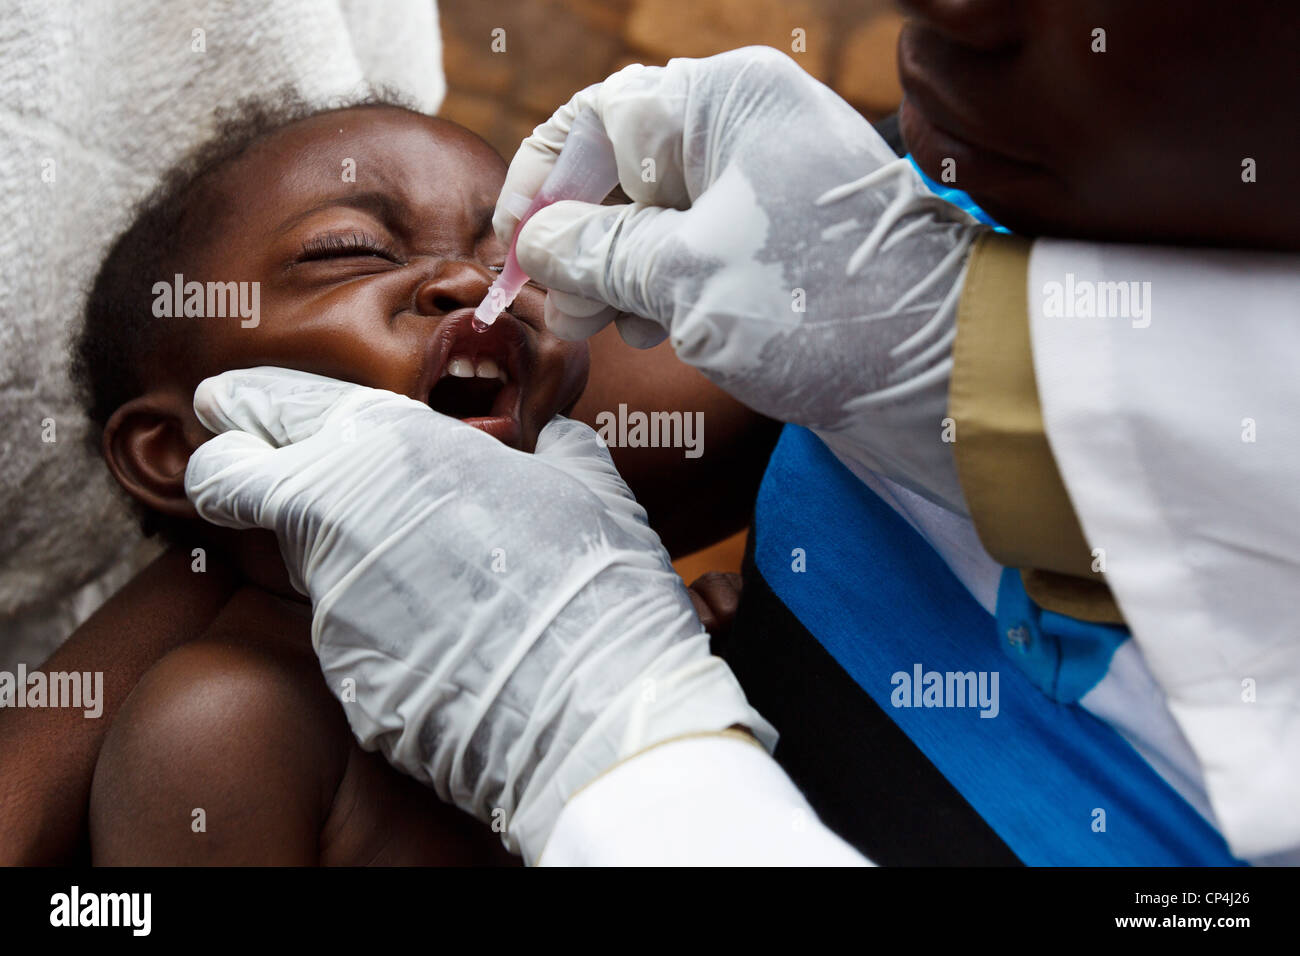 Un enfant reçoit deux gouttes de vaccin contre la poliomyélite au cours de la vaccination de routine à l'Nyunzu centre de santé dans la ville de Nyunzu, RDC Banque D'Images